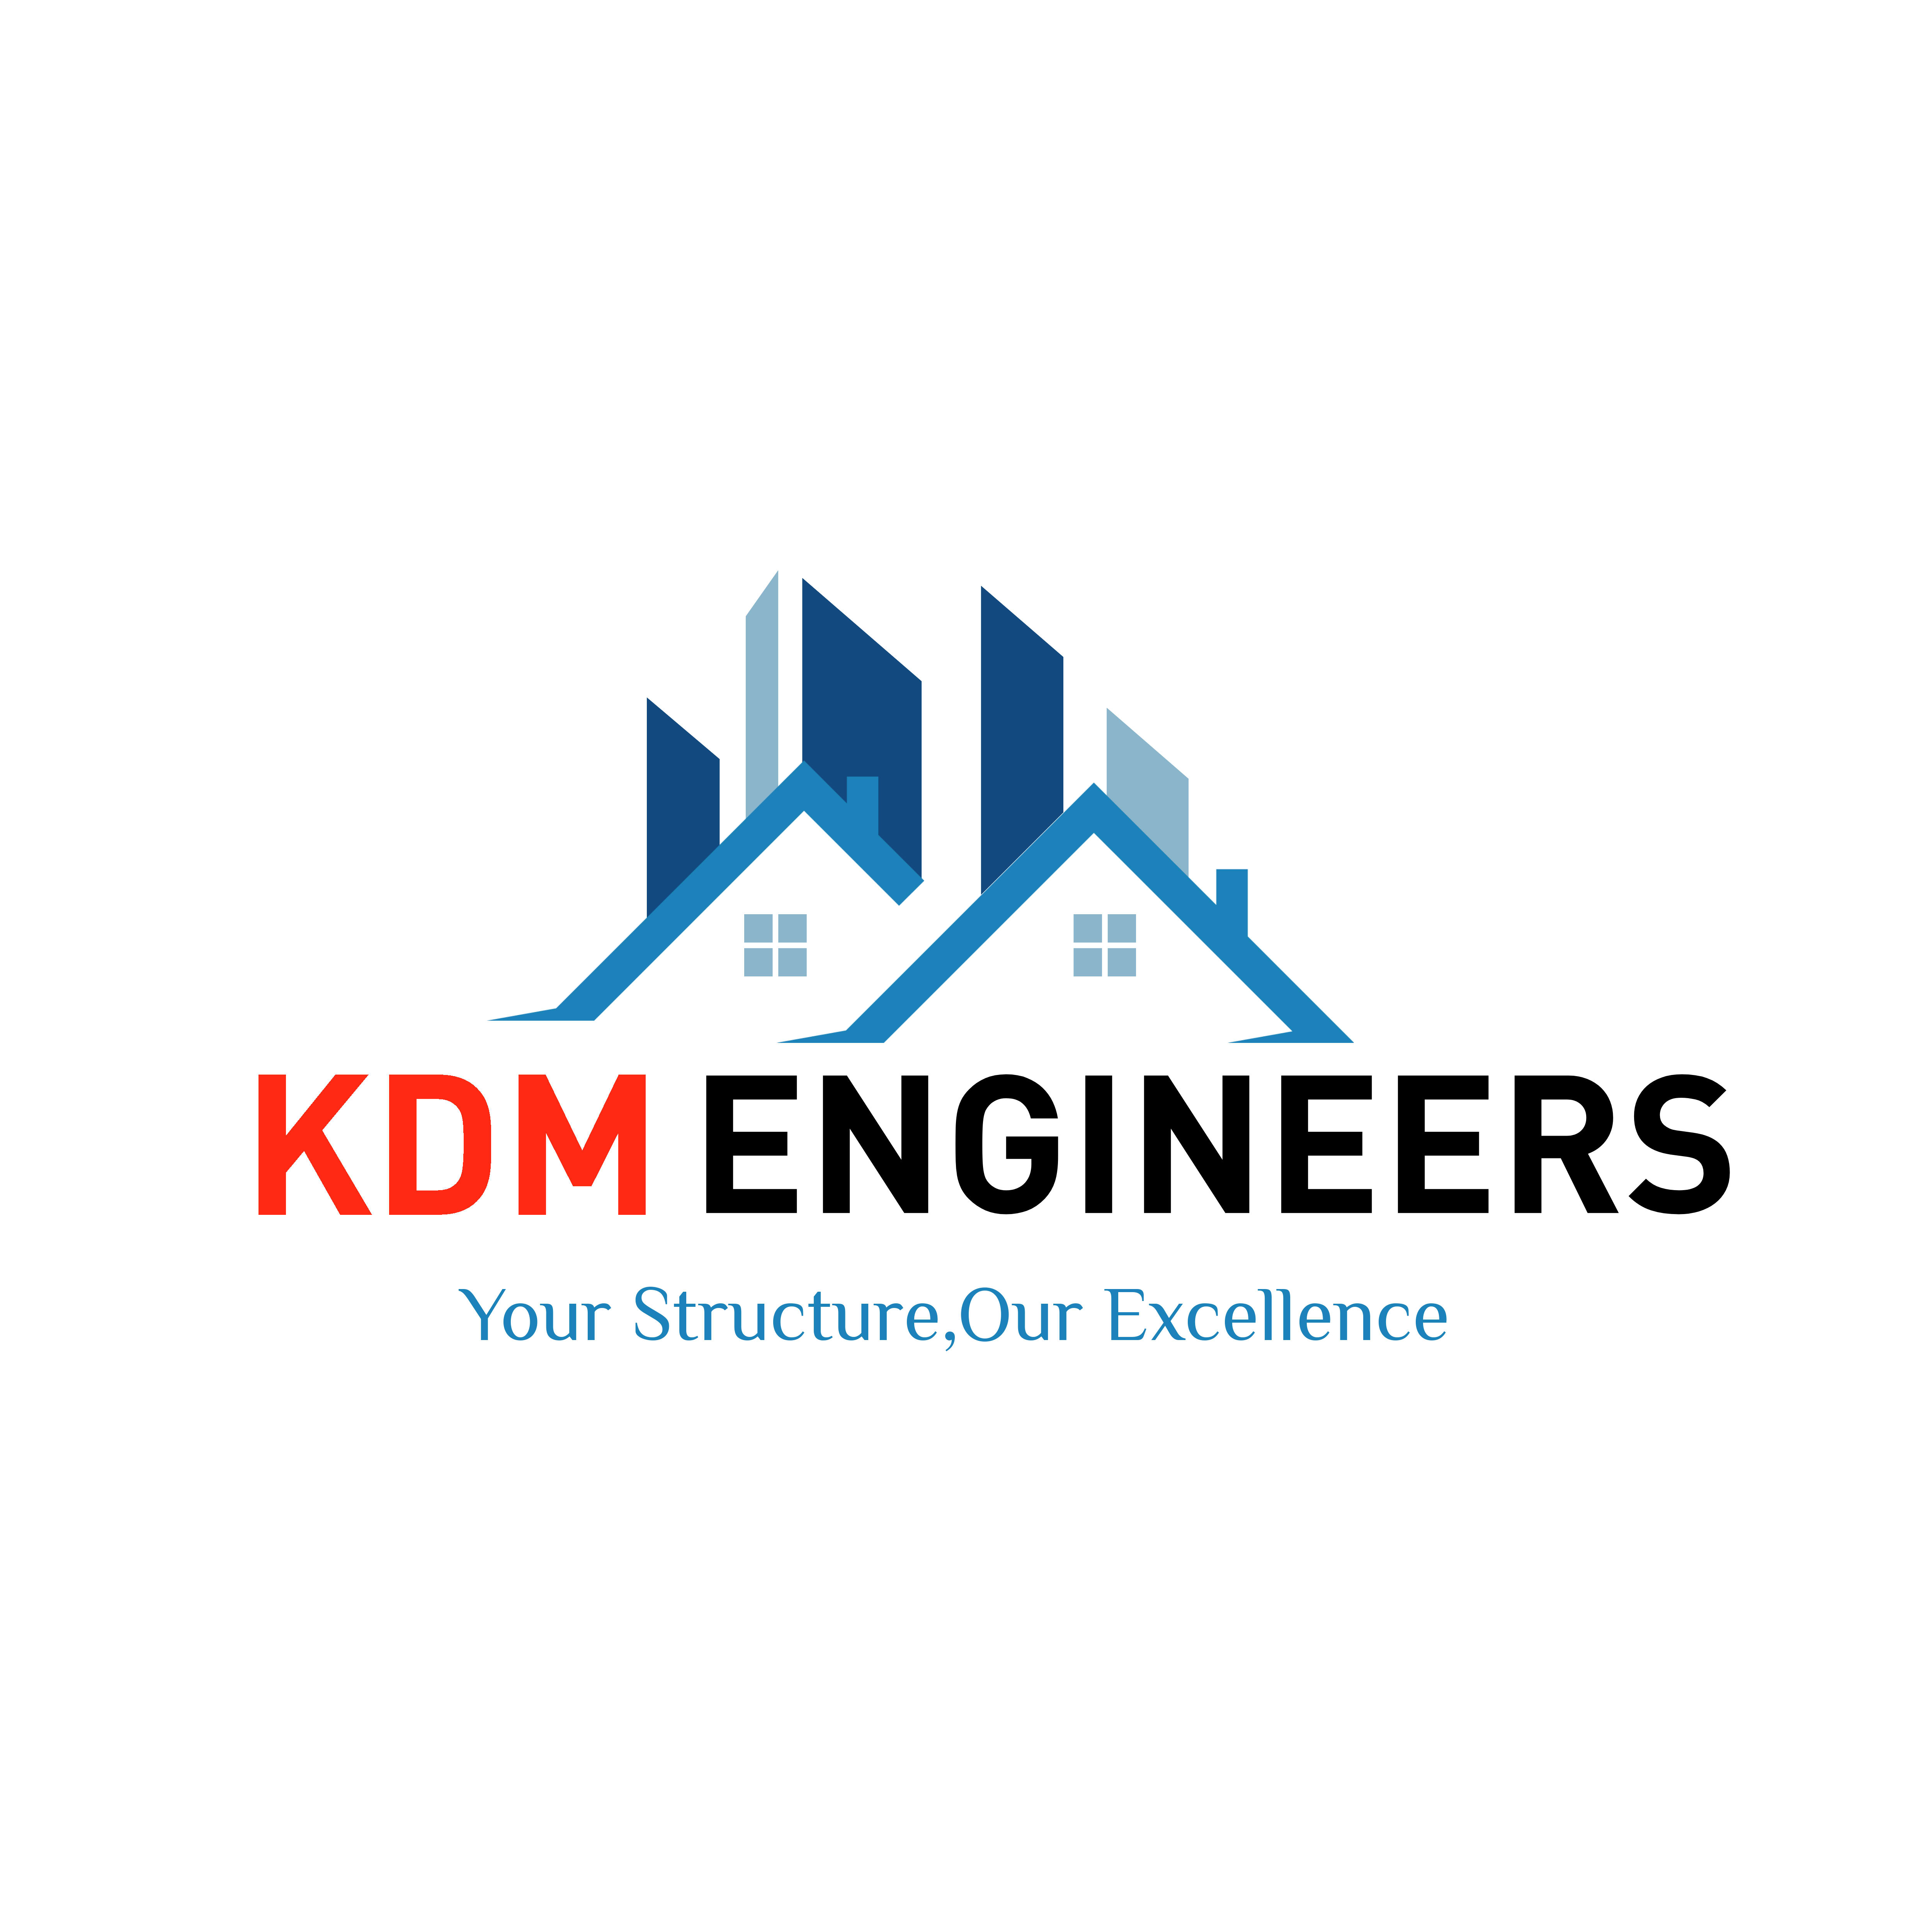 KDM Engineers